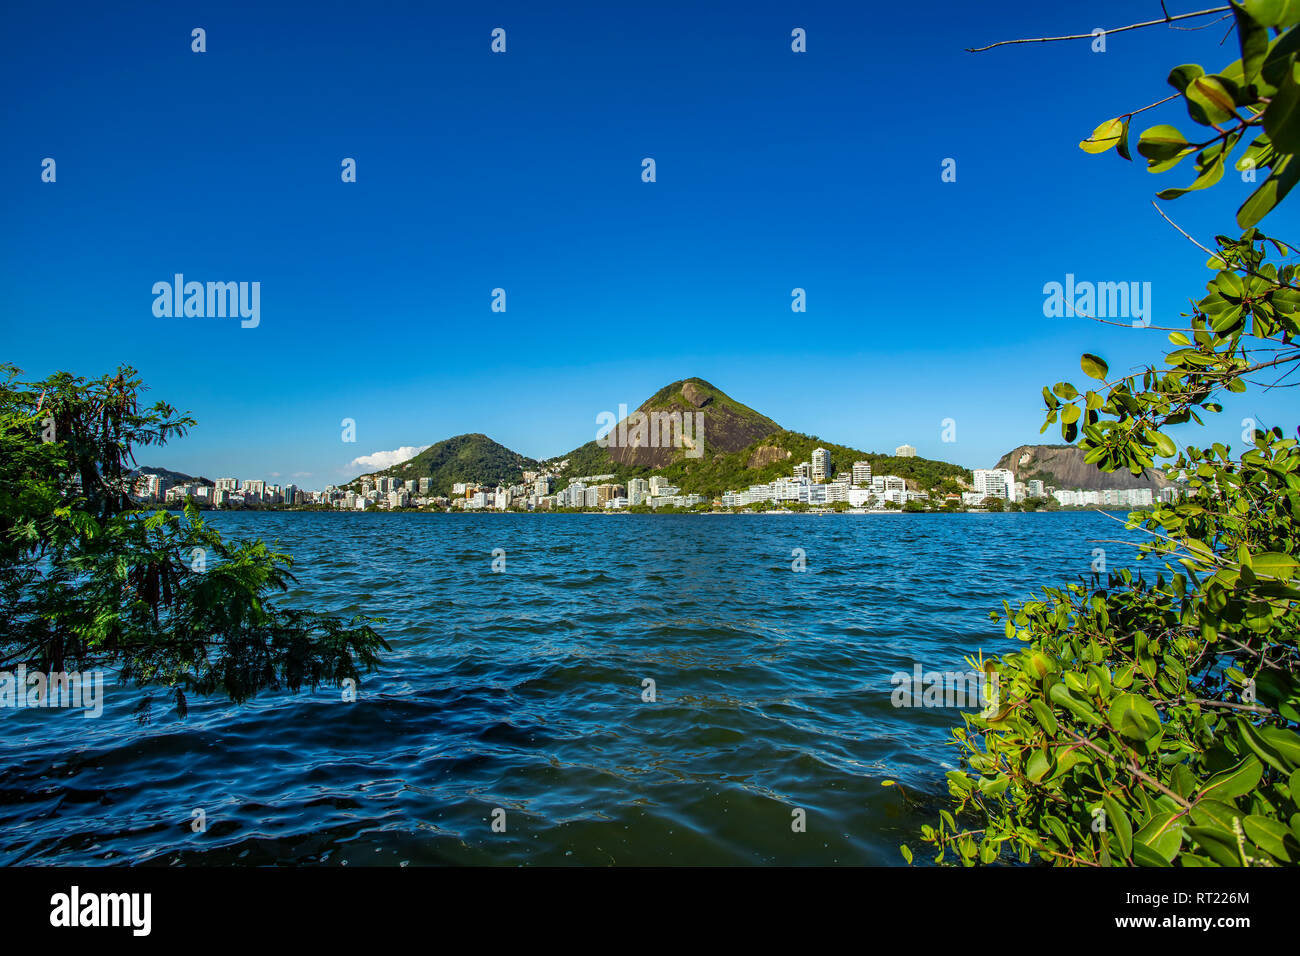 Wundervolle Stadt. Wunderbare Orte in der Welt. Lagune und Nachbarschaft von Ipanema in Rio de Janeiro, Brasilien Südamerika. Stockfoto